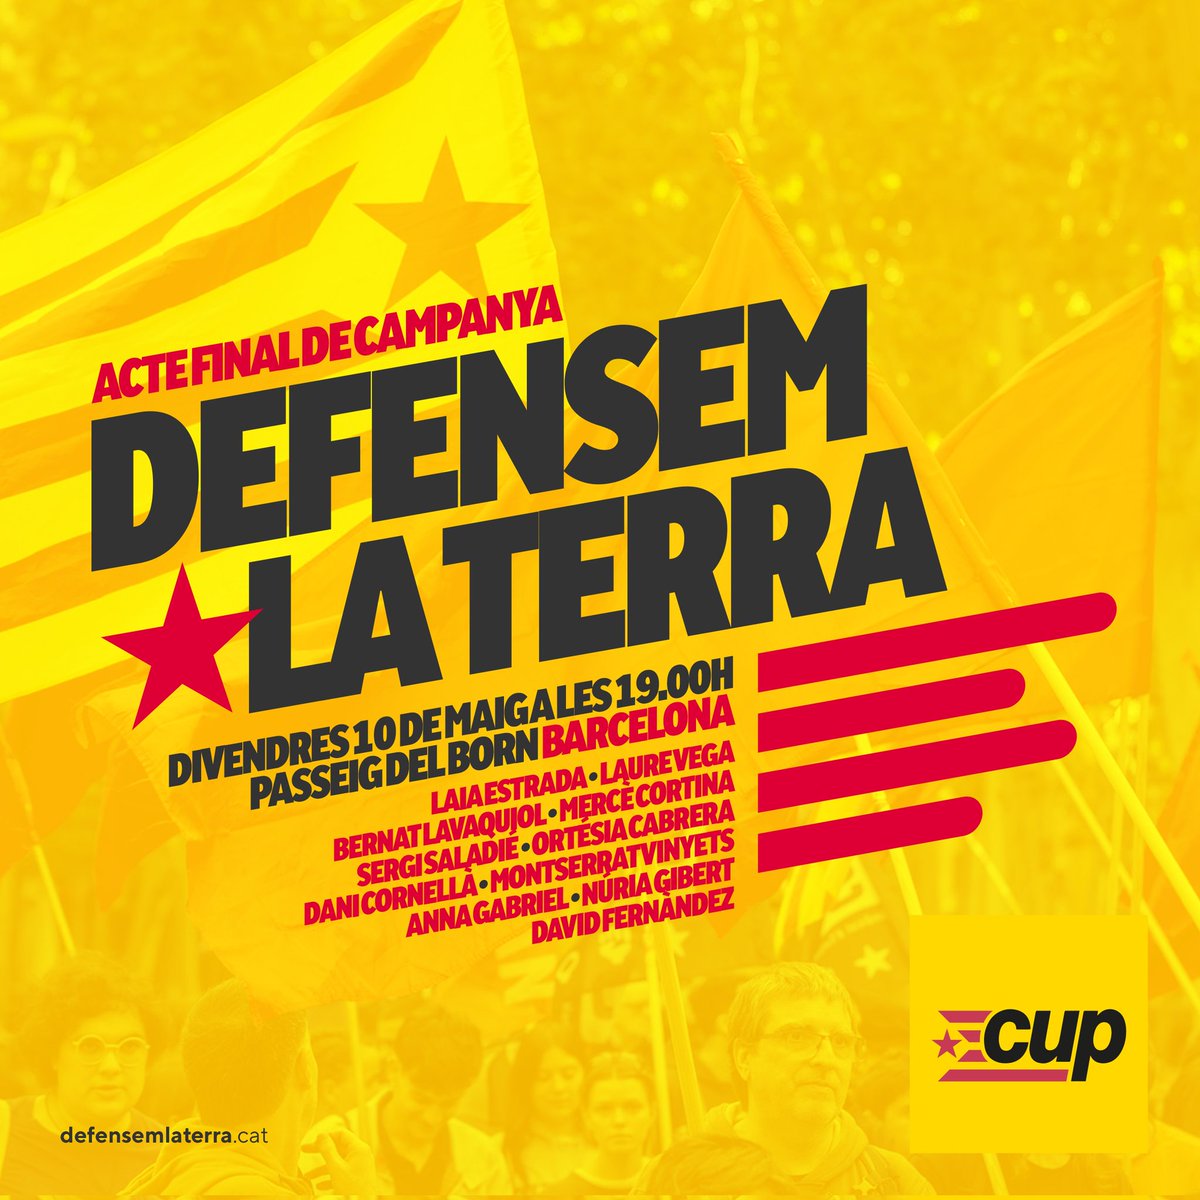 ACTE FINAL DE CAMPANYA A BARCELONA Vine al tancament de campanya de la @cupnacional i demostrem com #DefensemLaTerra, deixant-nos la pell perquè #UnAltrePaísÉsPossible! ✊🌿 🗓️ Divendres 10 de maig 🕗 A les 19.00 h 📍Passeig del Born, Barcelona